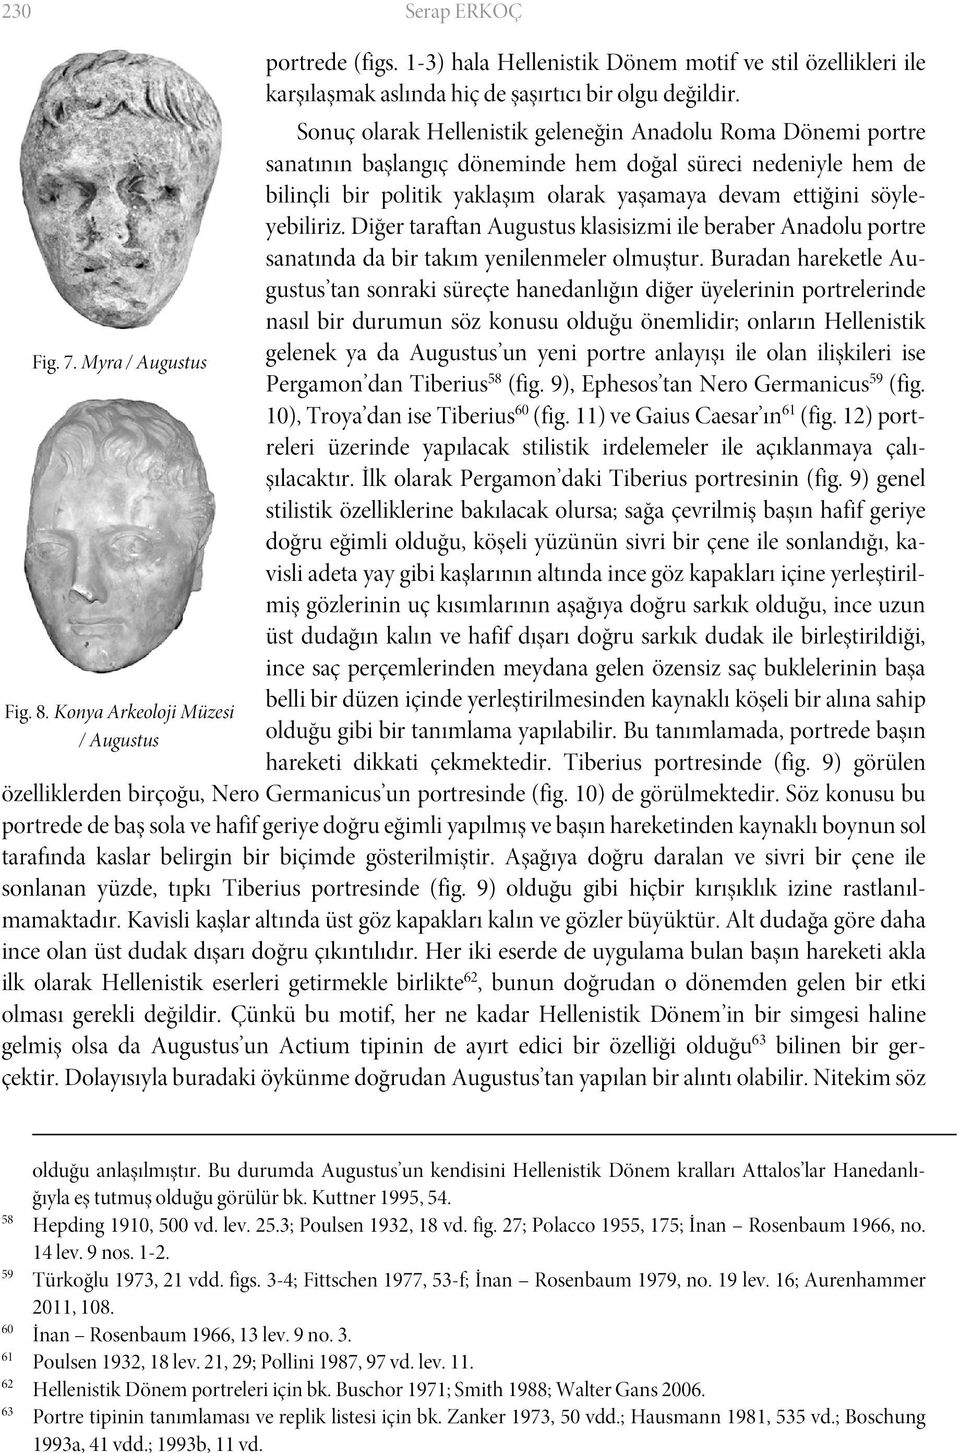 Sonuç olarak Hellenistik geleneğin Anadolu Roma Dönemi portre sanatının başlangıç döneminde hem doğal süreci nedeniyle hem de bilinçli bir politik yaklaşım olarak yaşamaya devam ettiğini